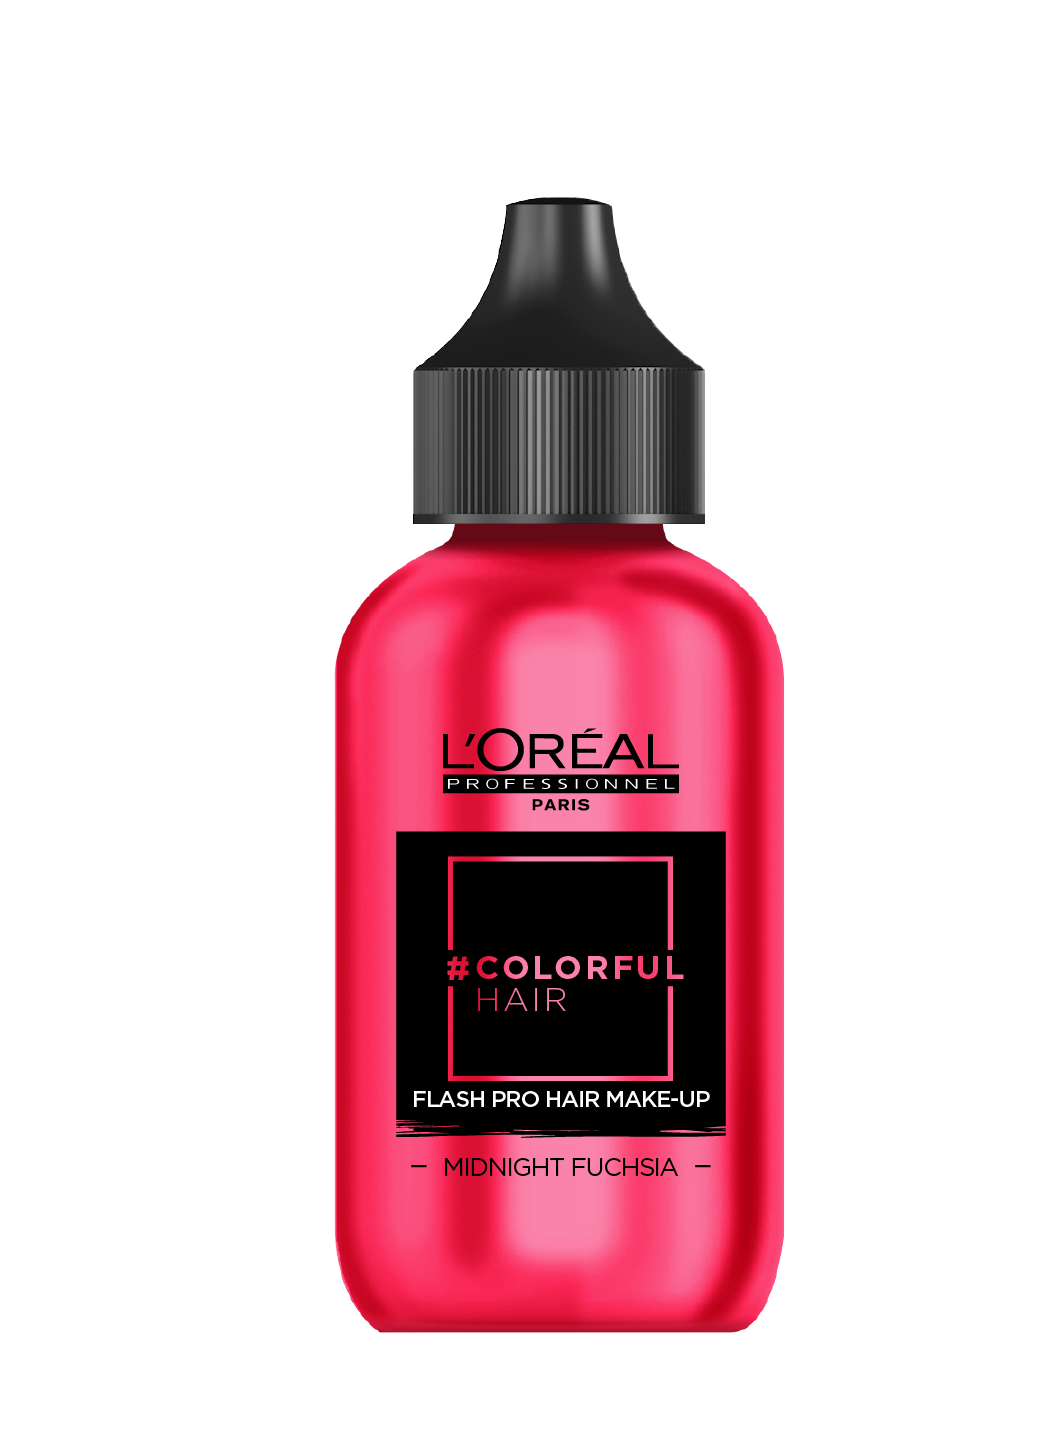 L’Oréal Professionnel, make-up do włosów, w kolorze Midnight Fuschia (Fot. materiały prasowe)